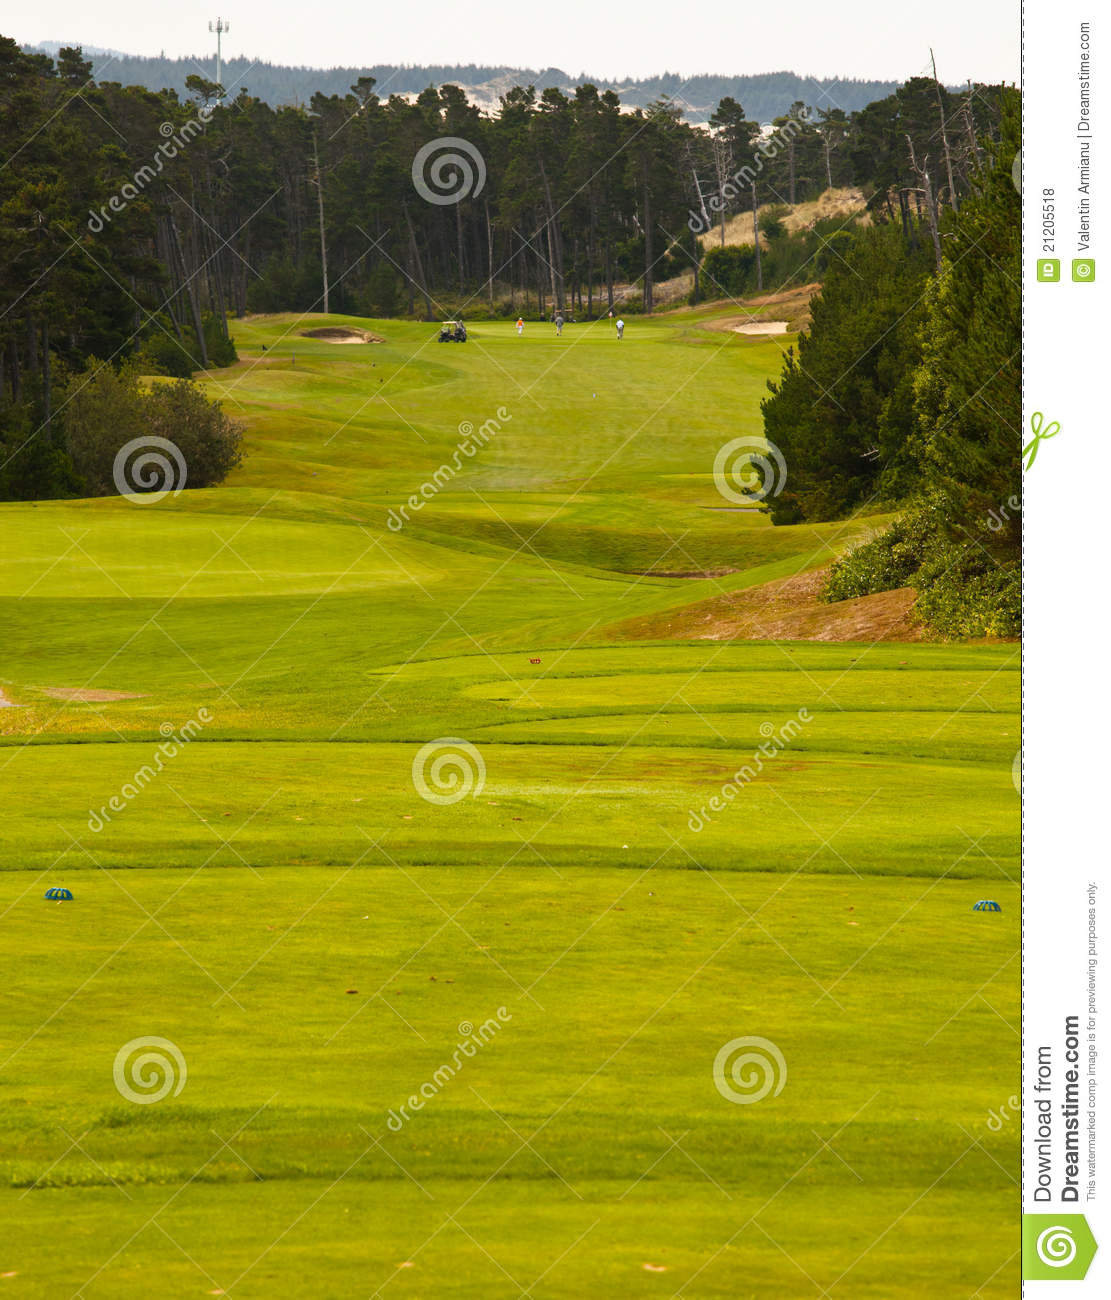 Royalty Free Golf Course Photos